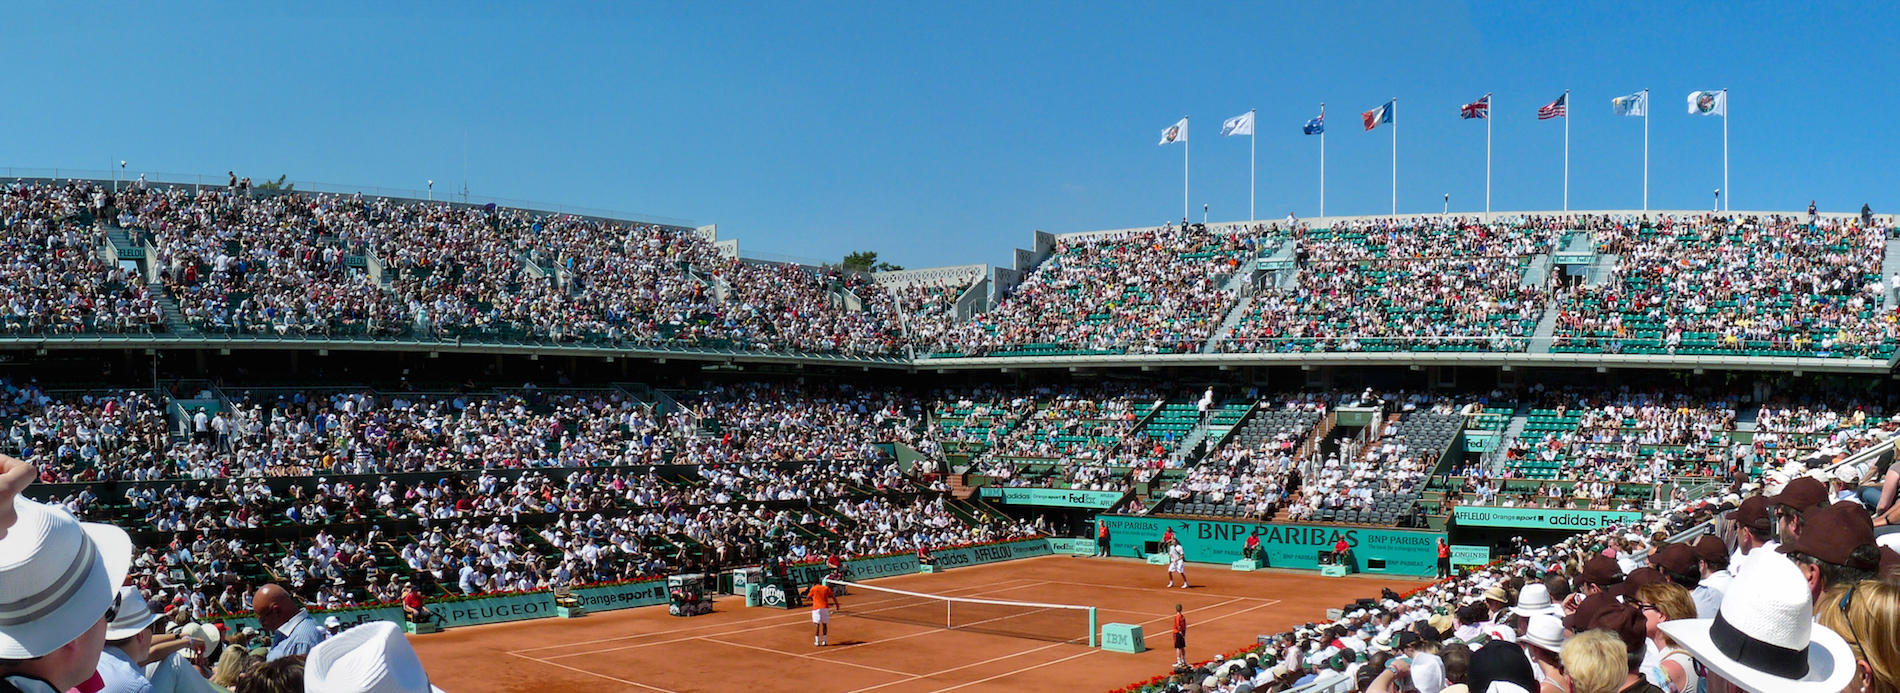 Roland Garros 2016 : les hôtels autour du stade